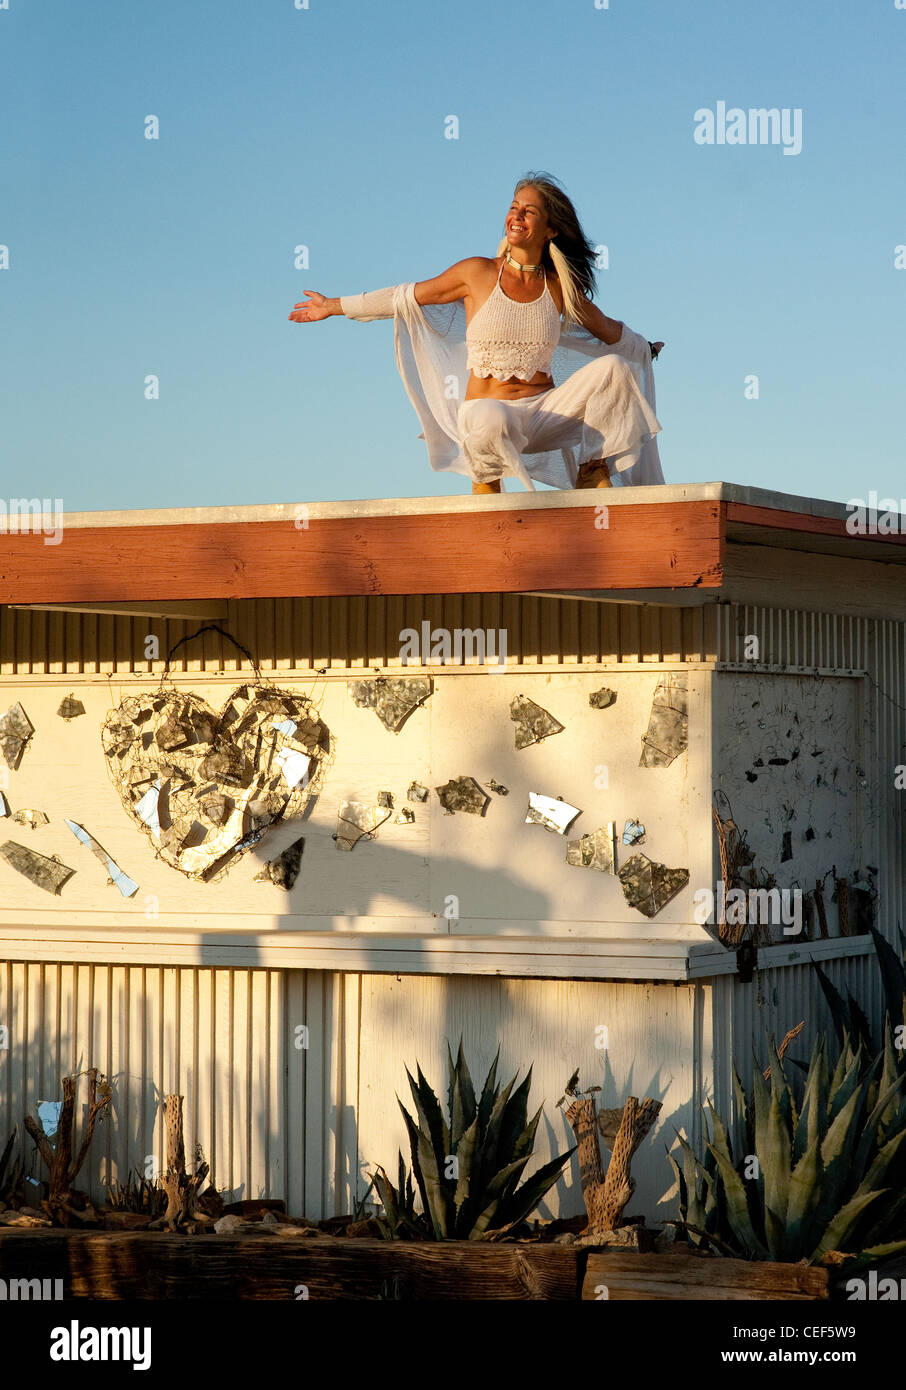 Femme holistique sur le toit d'une habitation peu arty funky. Banque D'Images